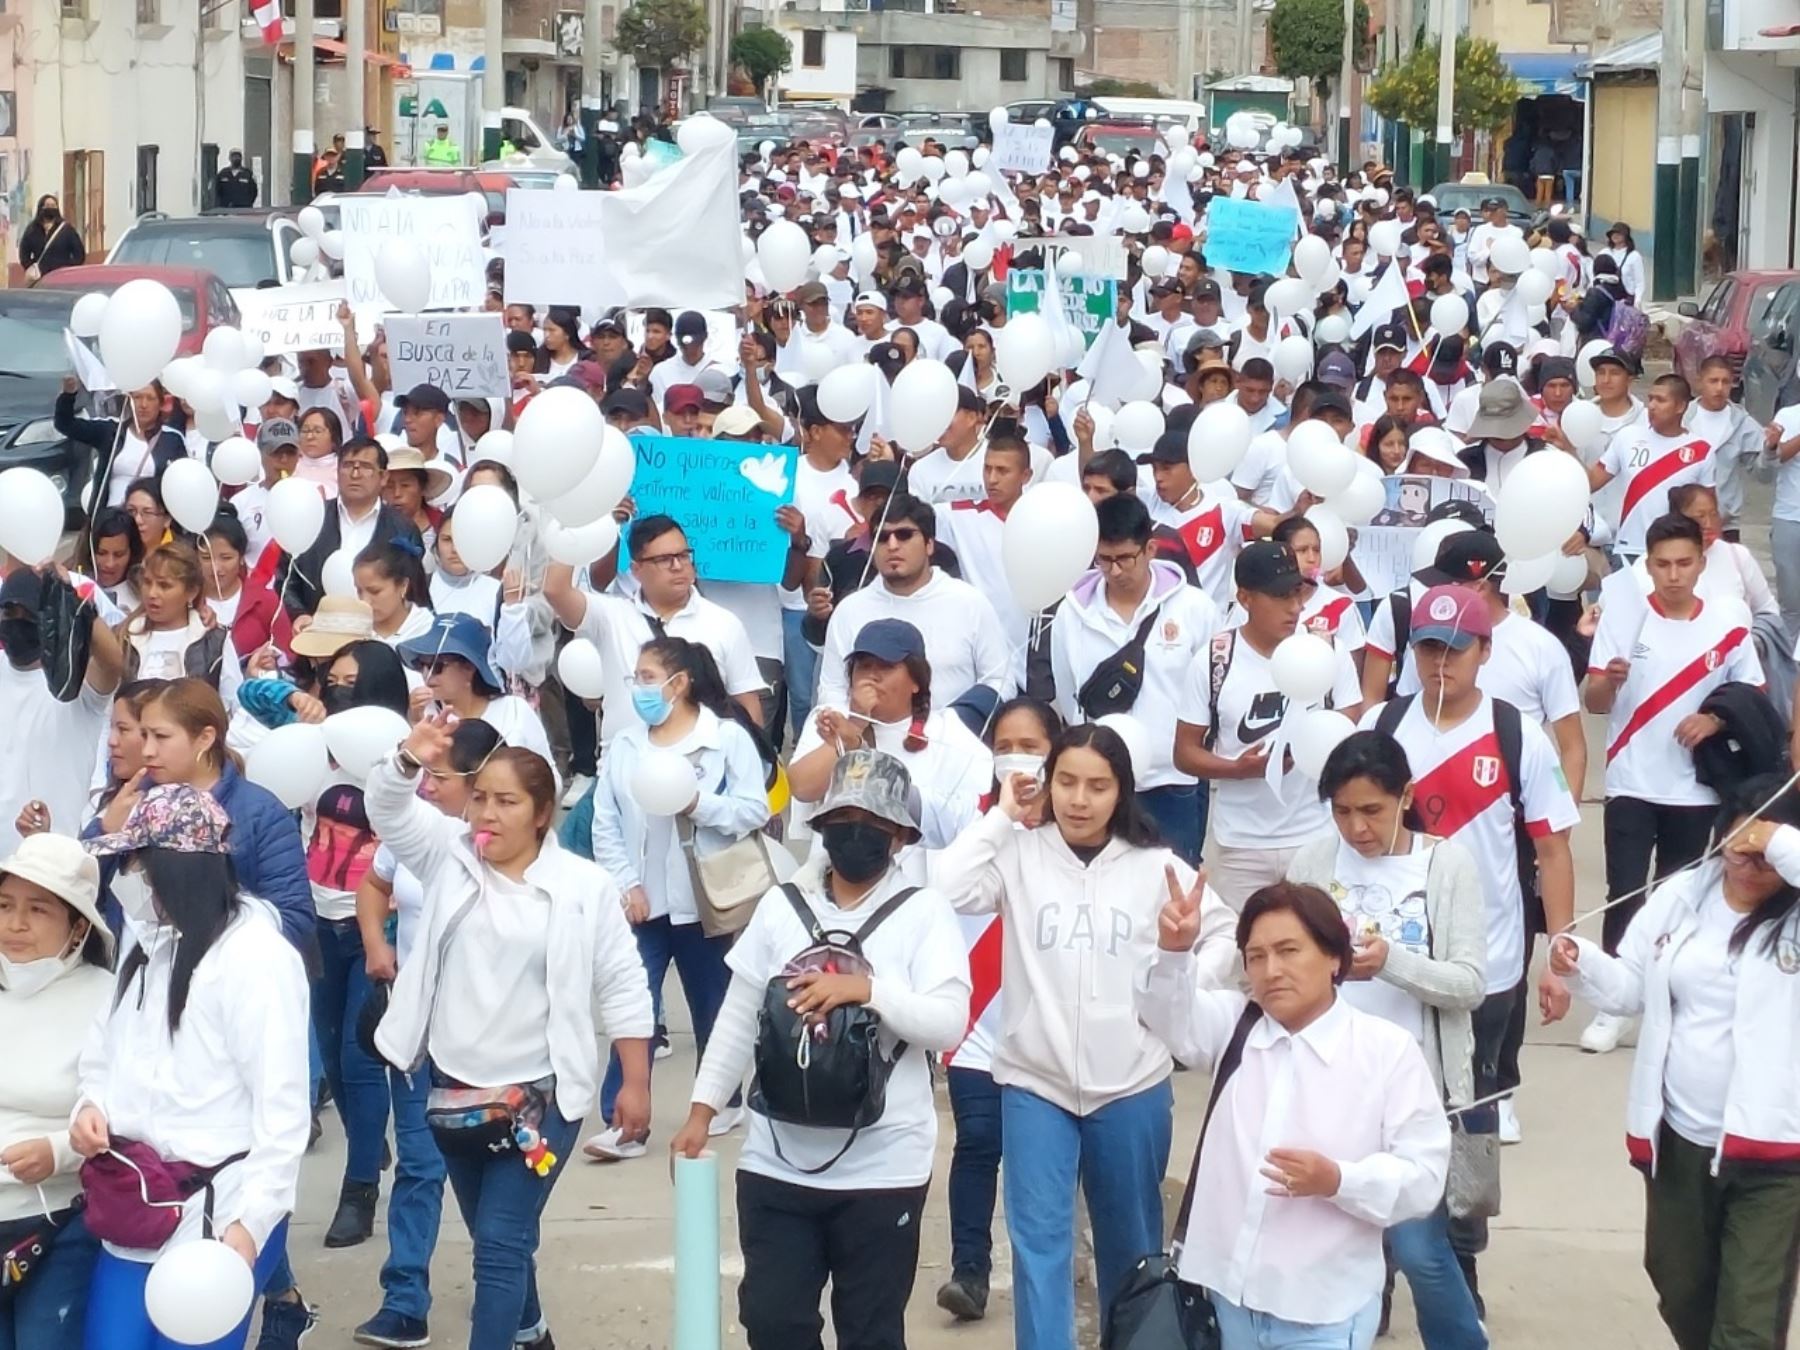 Miles de personas marcharon por la paz en la ciudad de Huancayo atendiendo una convocatoria de las juntas vecinales de la capital de la región Junín. Foto: Pedro Tinoco